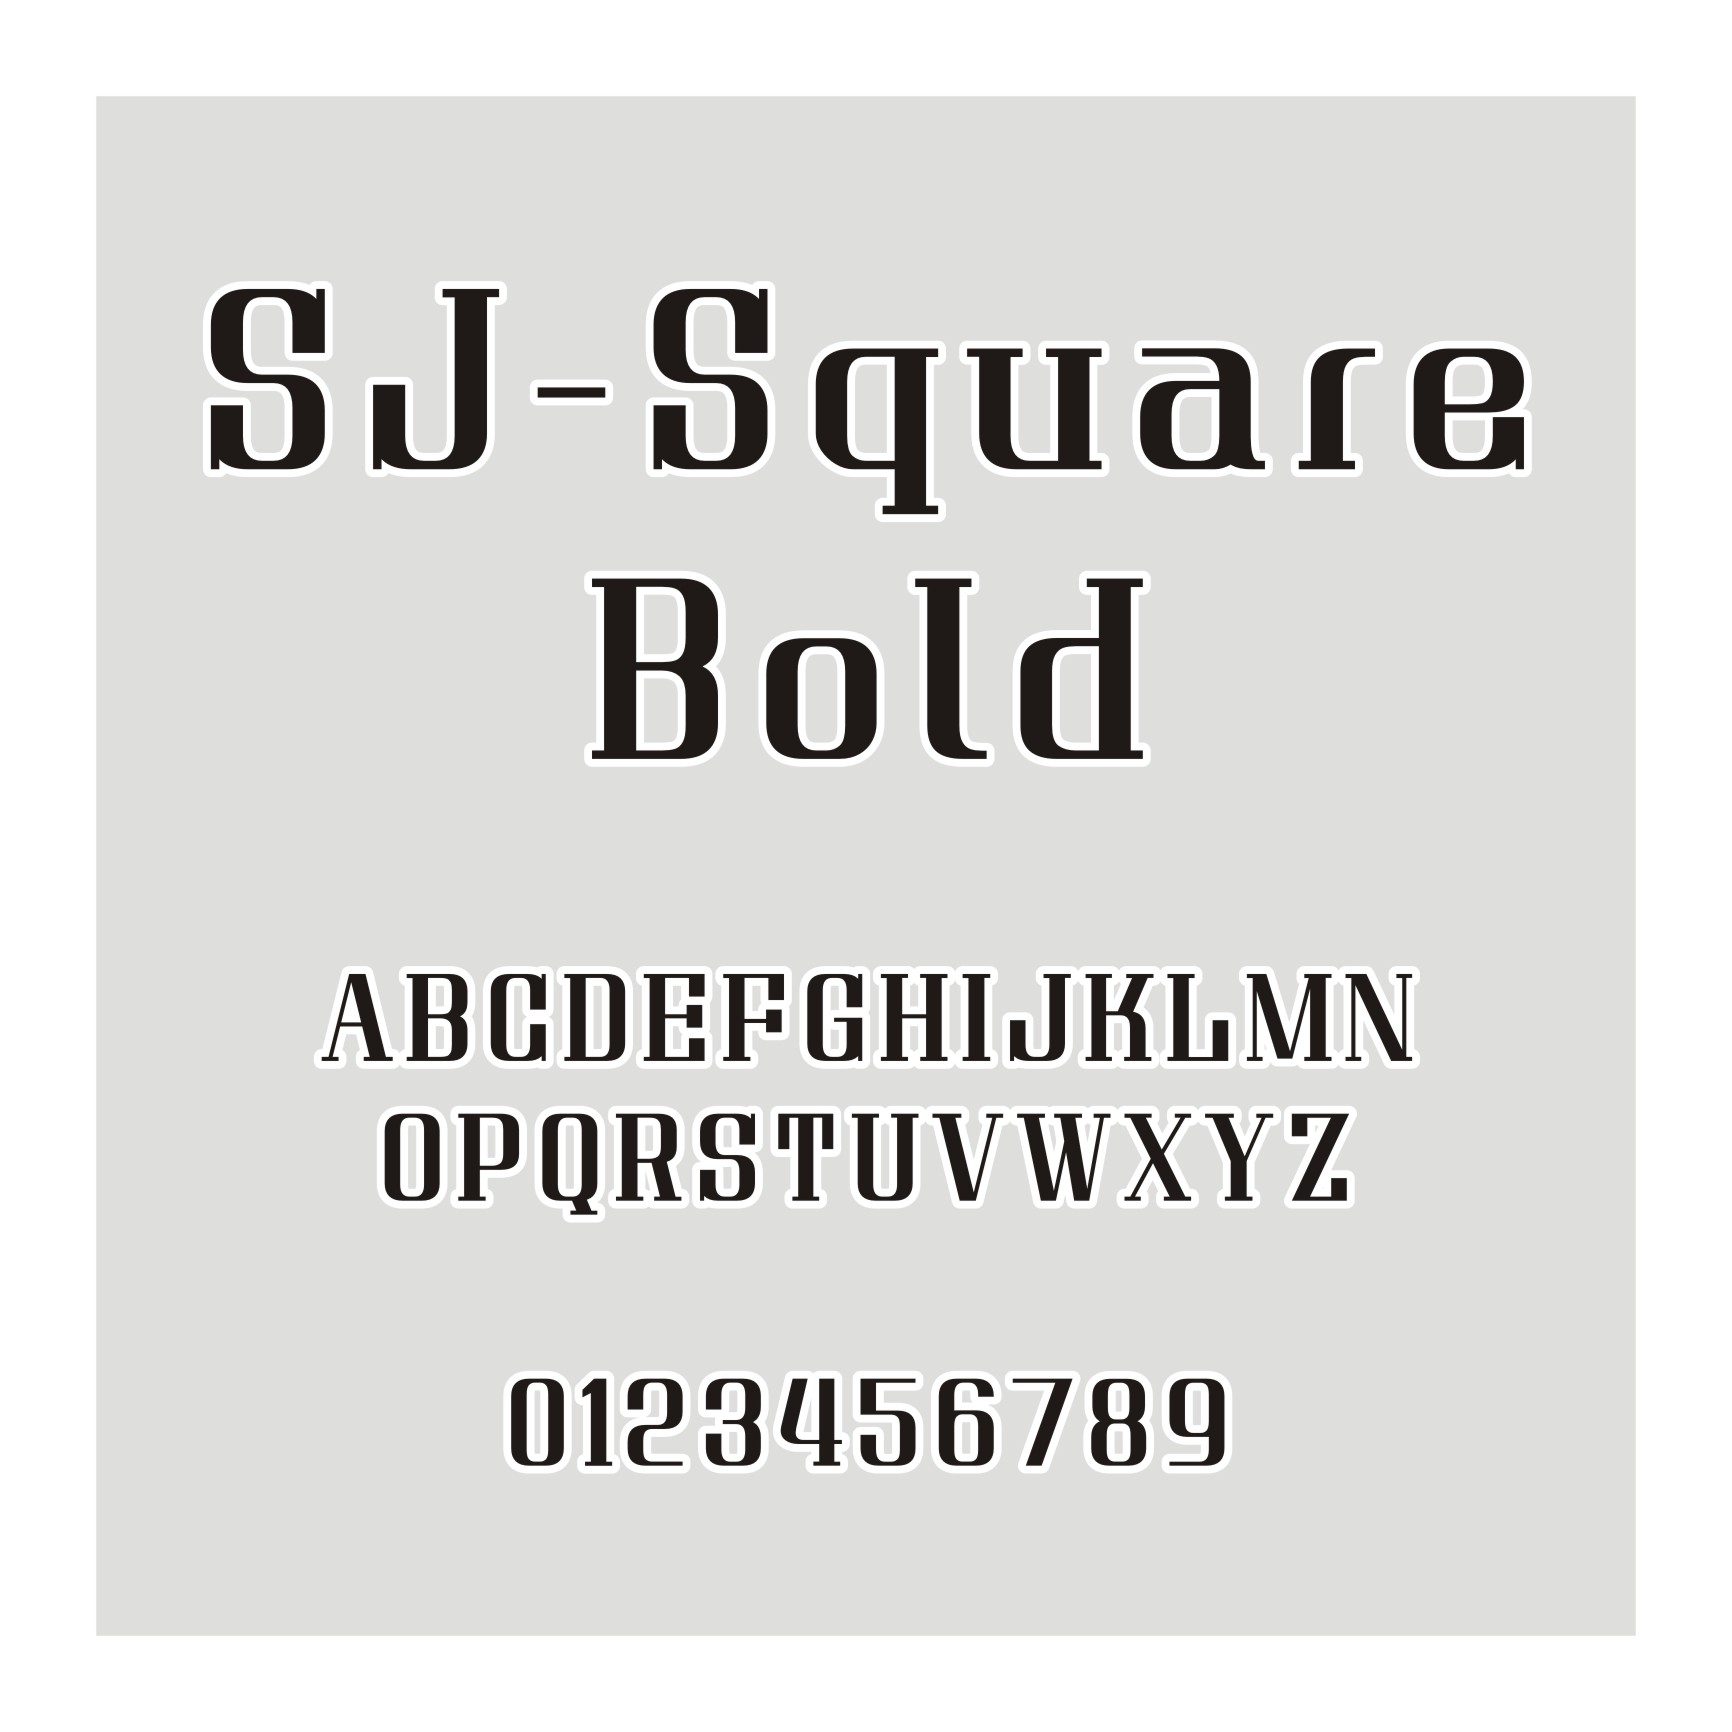 SJ-Square Bold